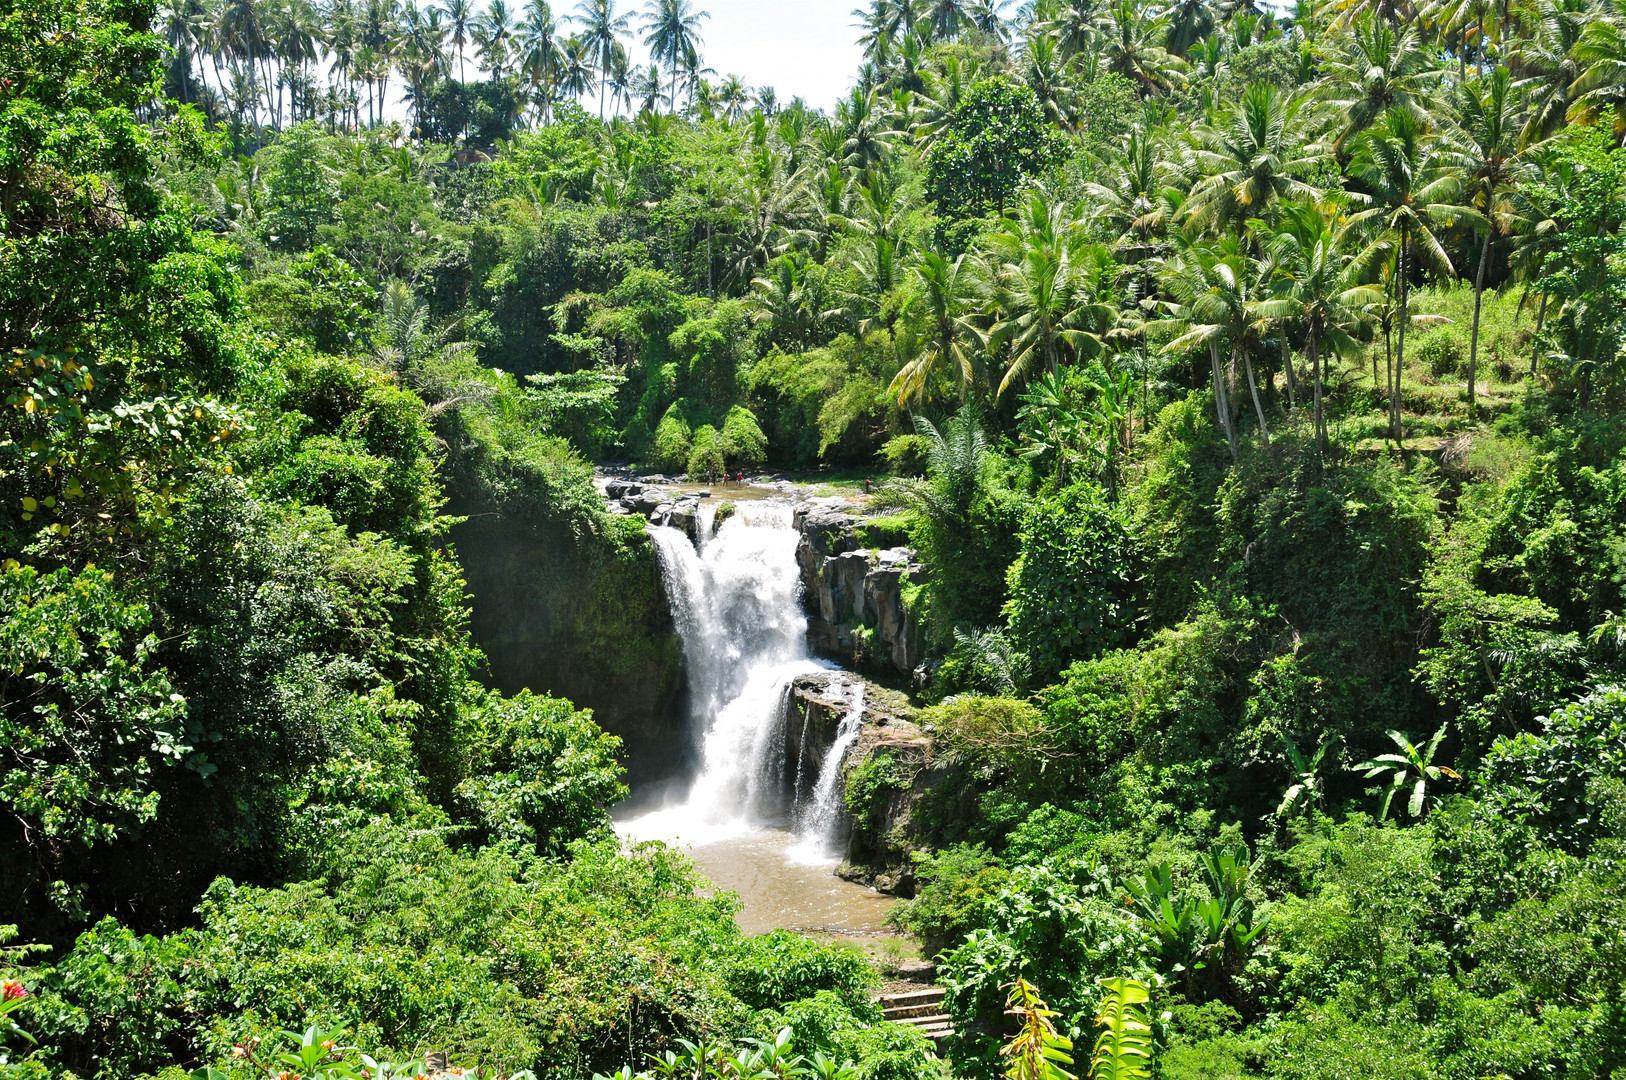 Wasserfall auf Bali